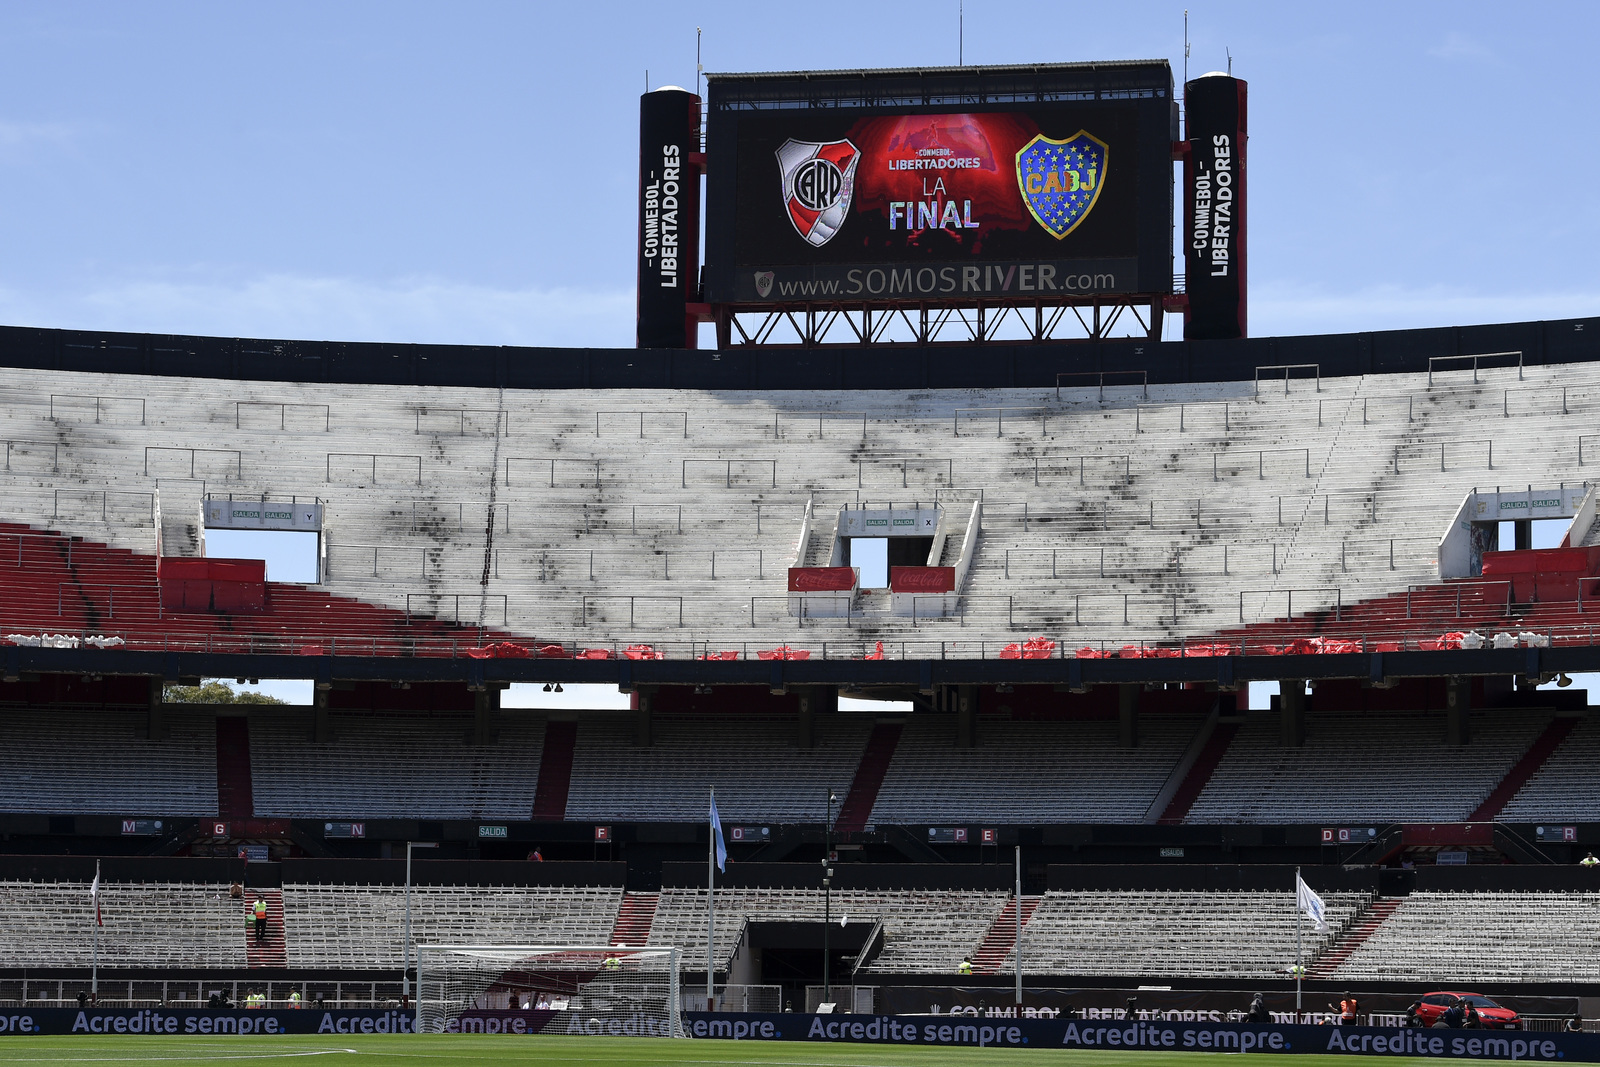 La final esperada de la Copa Libertadores entre River Plate y Boca Juniors no pudo llevarse a cabo por la mala conducta de los aficionados.